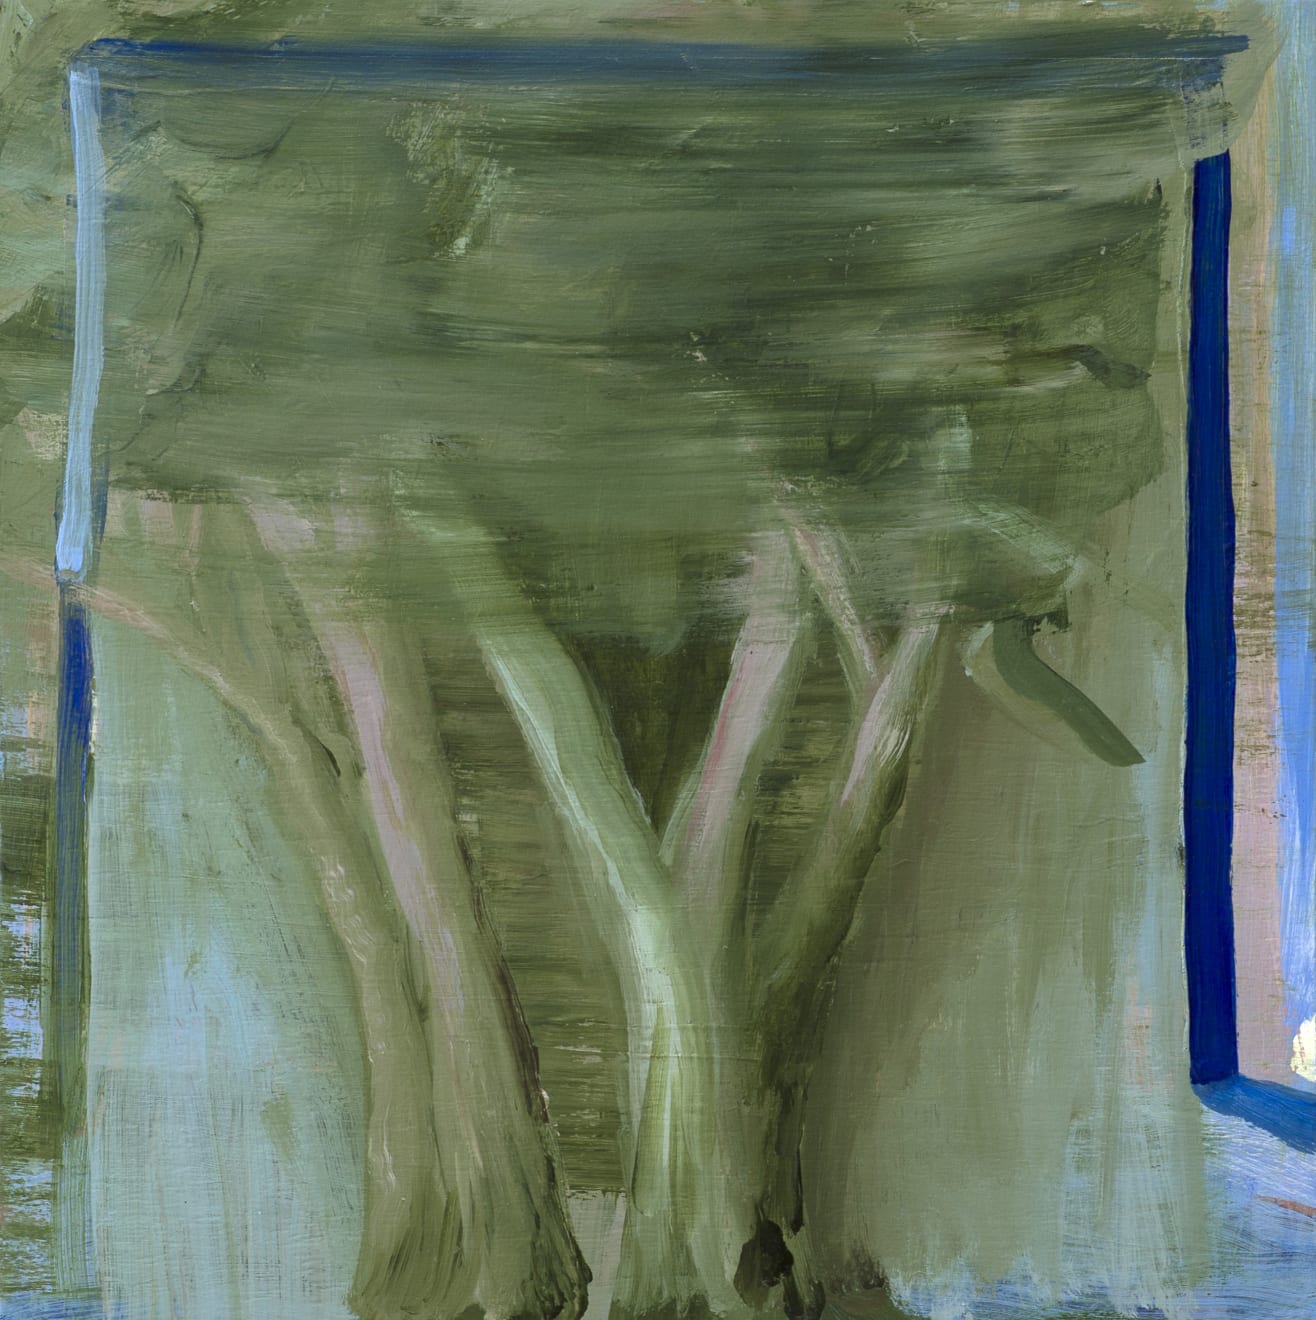 Kathryn Dolby Windy Window Acrylic on Board Original 32 x 32 cm Walnut Frame $850 SOLD